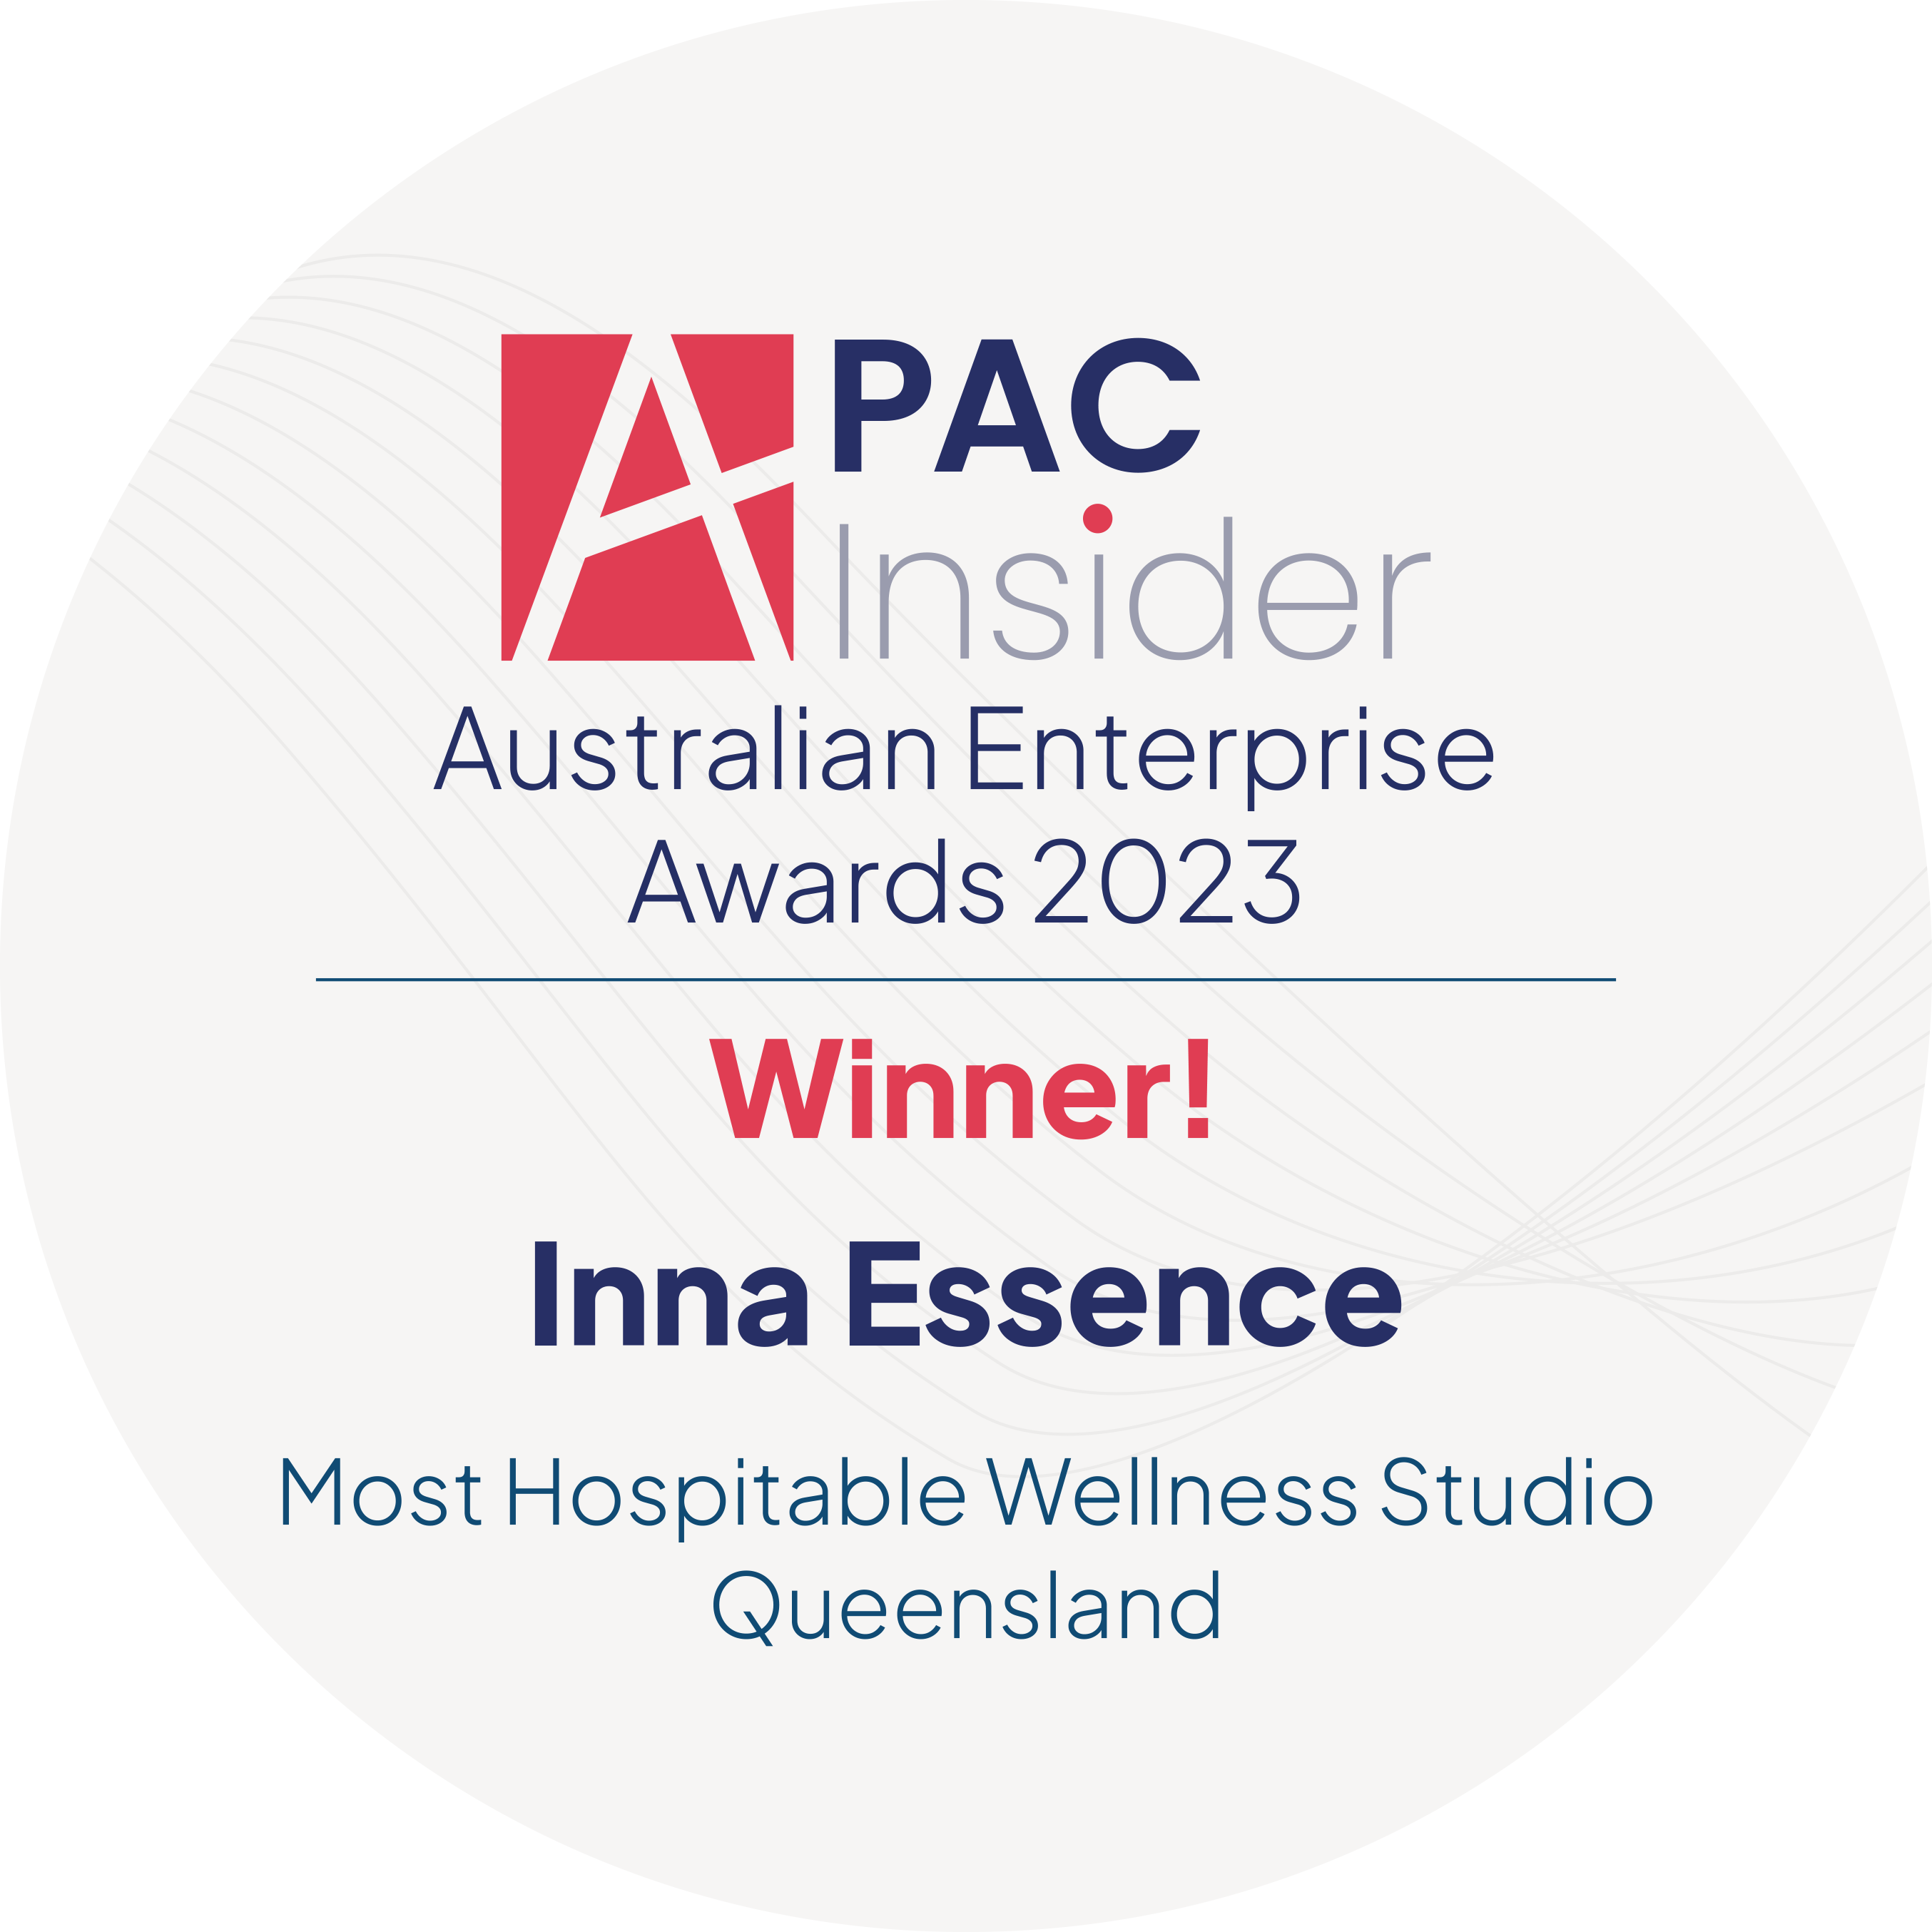 Australian Enterprise Awards 2023 Winner